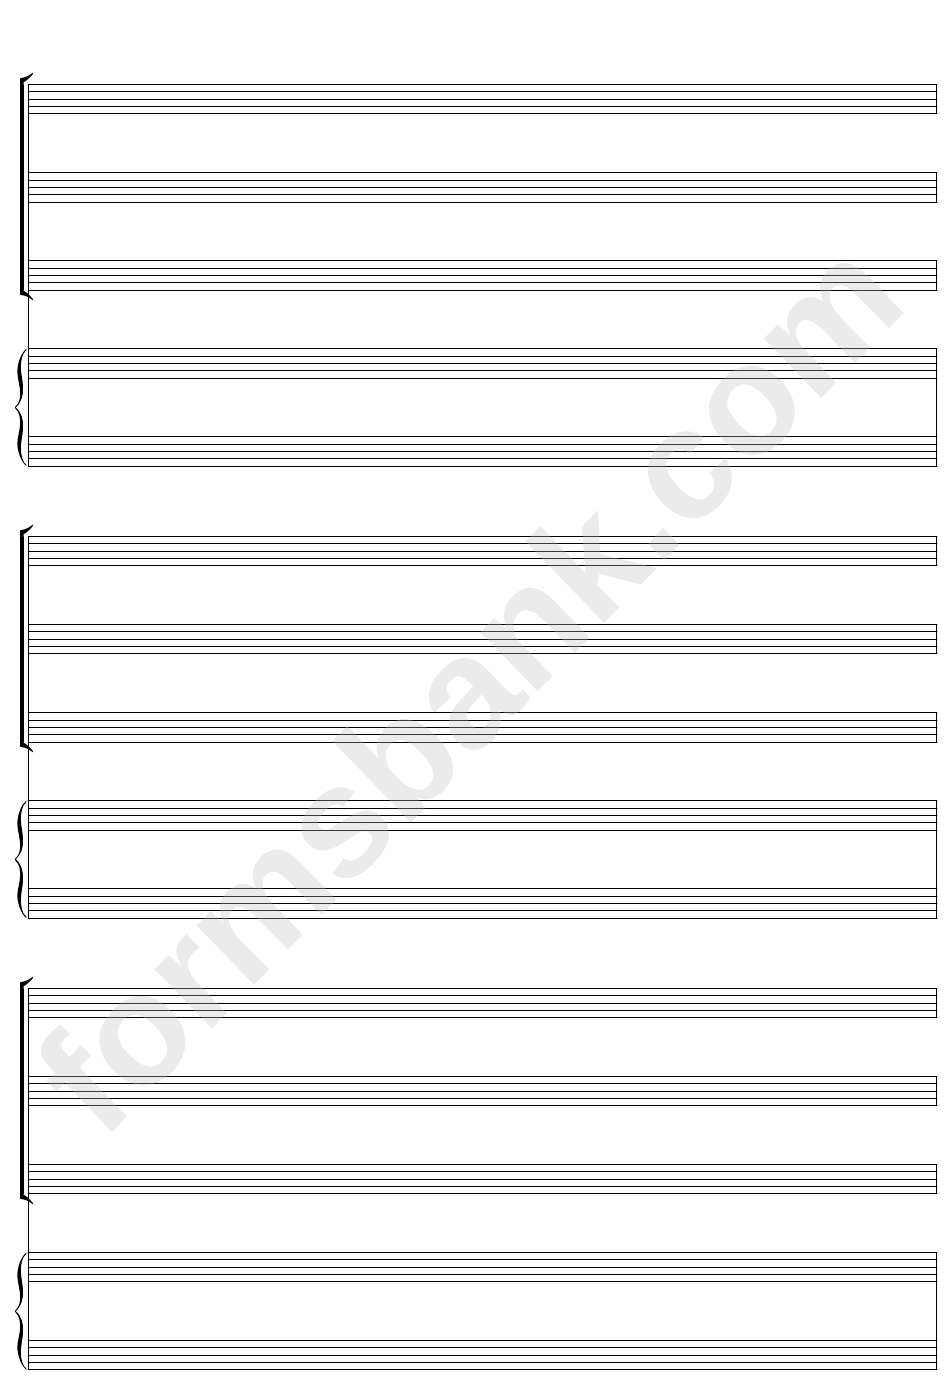 Keyboard + Three, Blank Clef (A4 Portrait) Blank Sheet Music